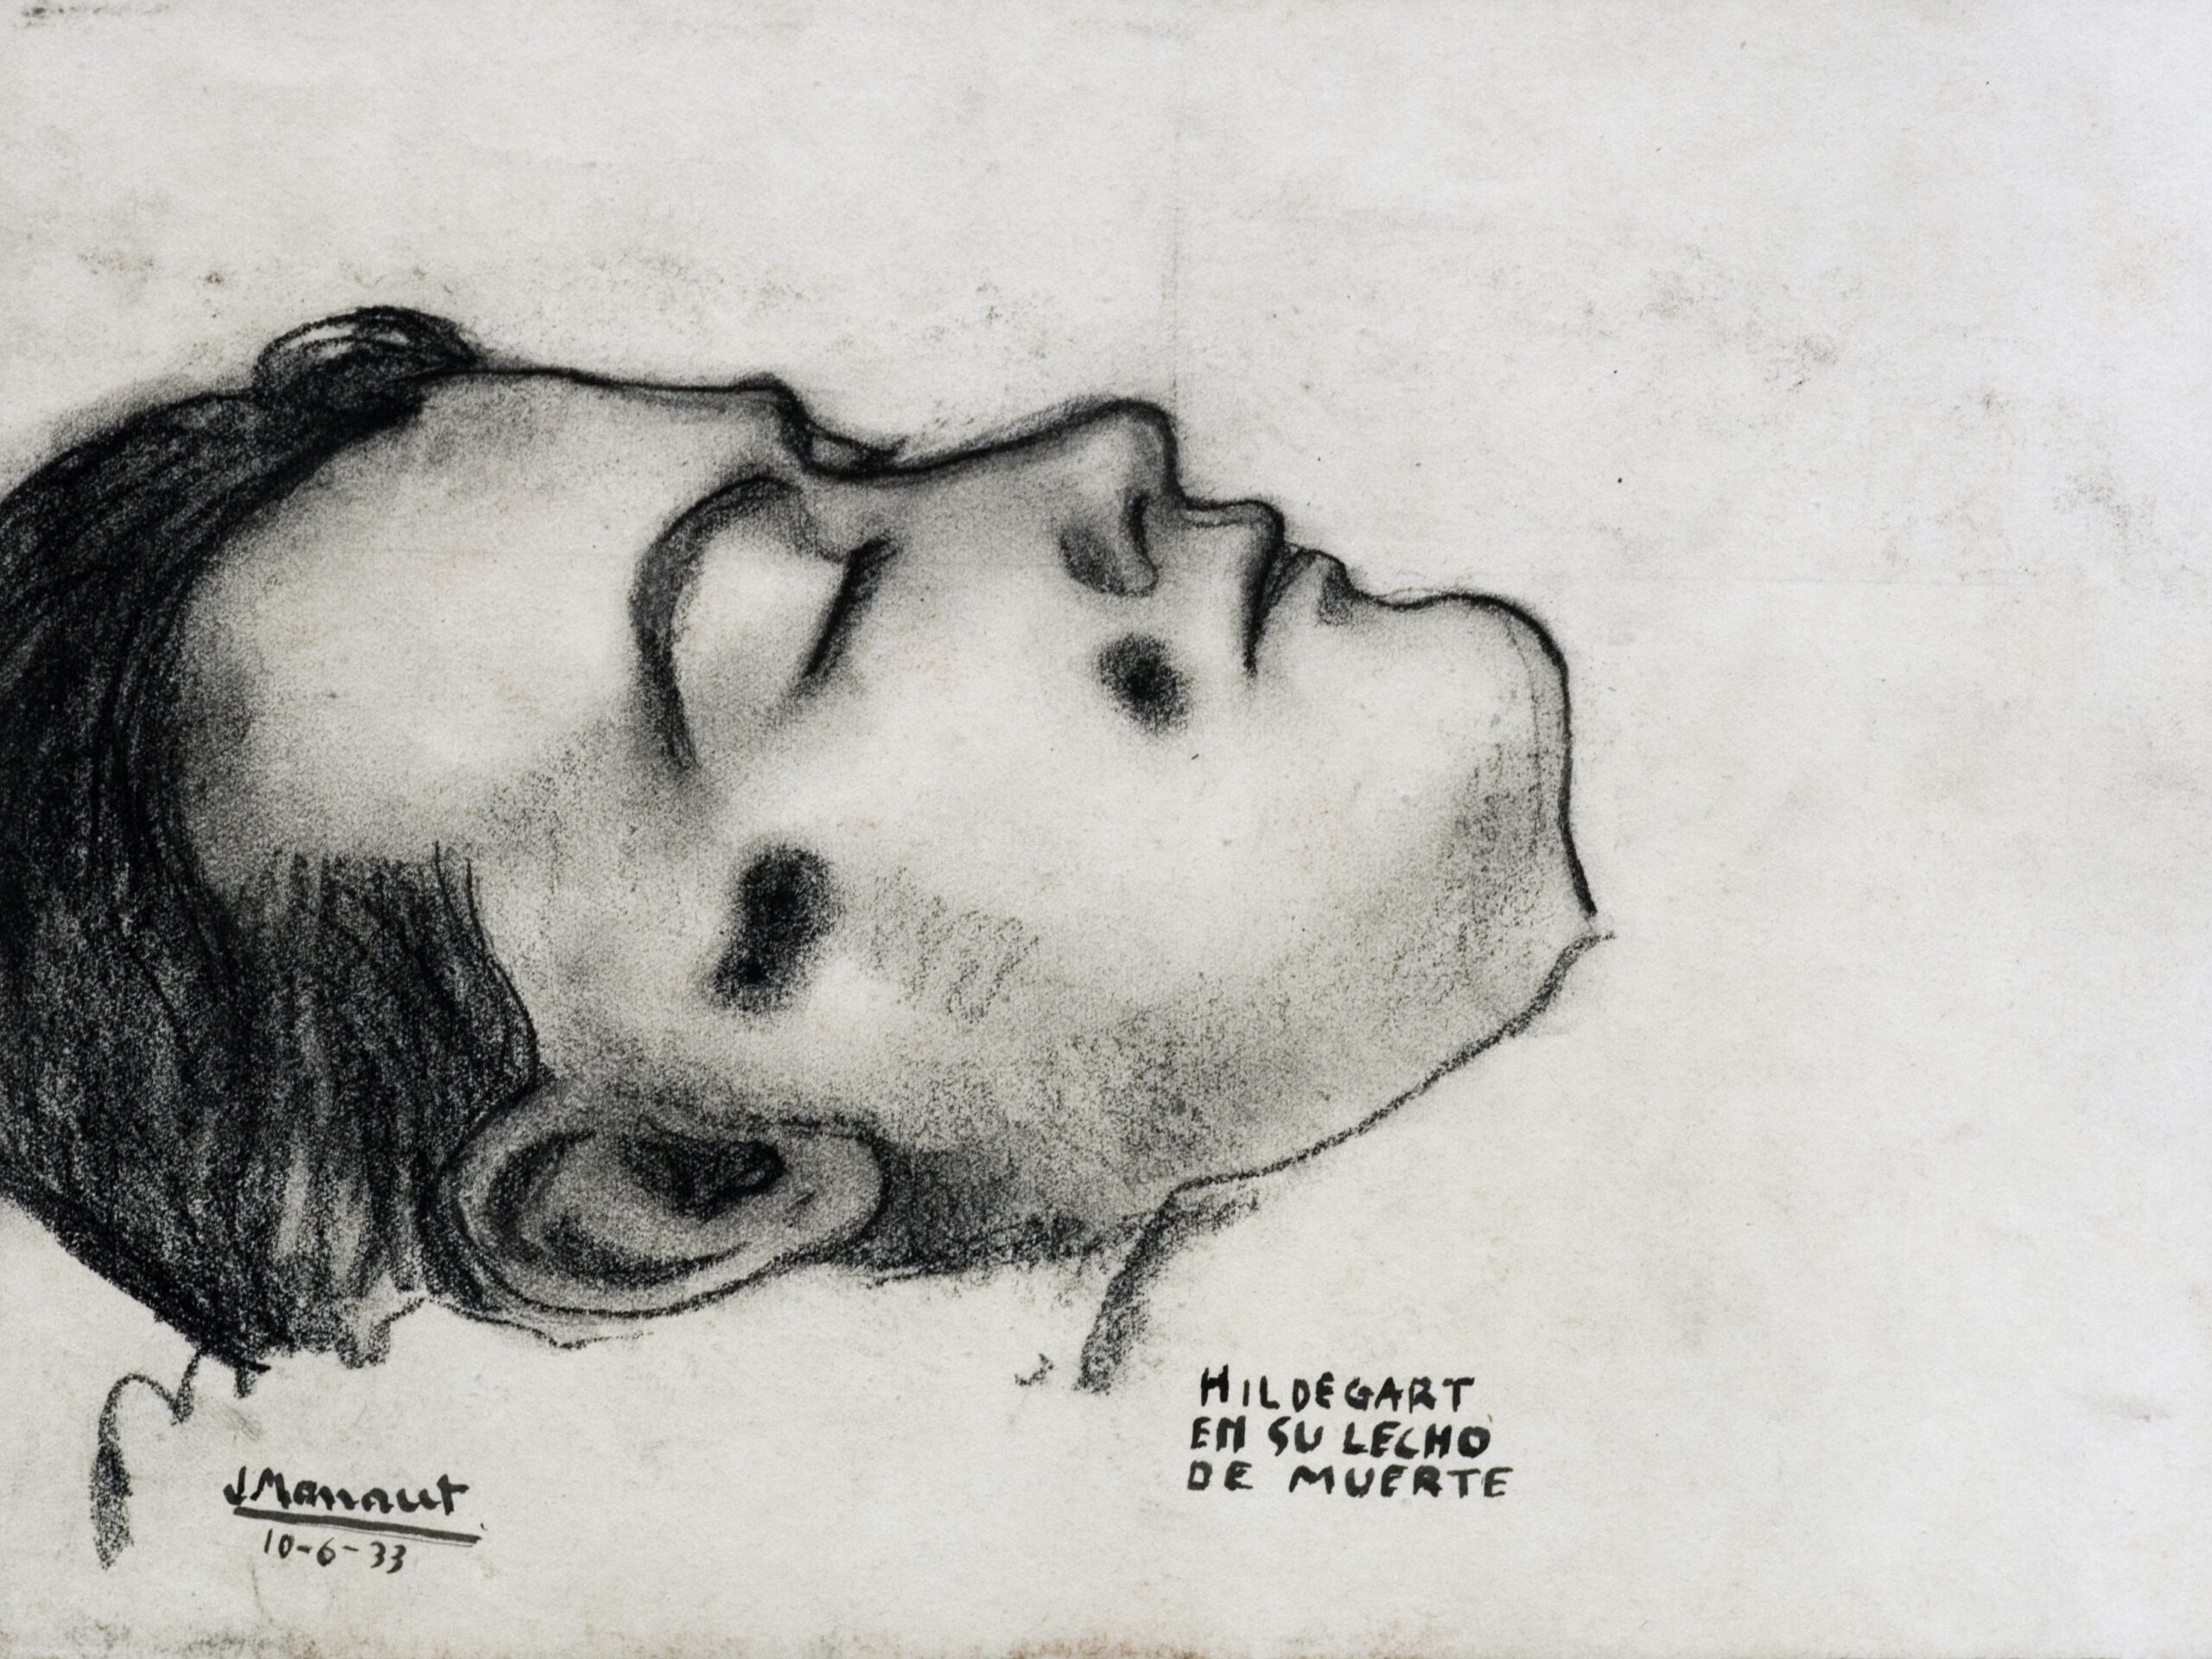 Dibujo de José Manaut titulado Hildegart García en su lecho de muerte, 1933. Lápiz sobre papel.